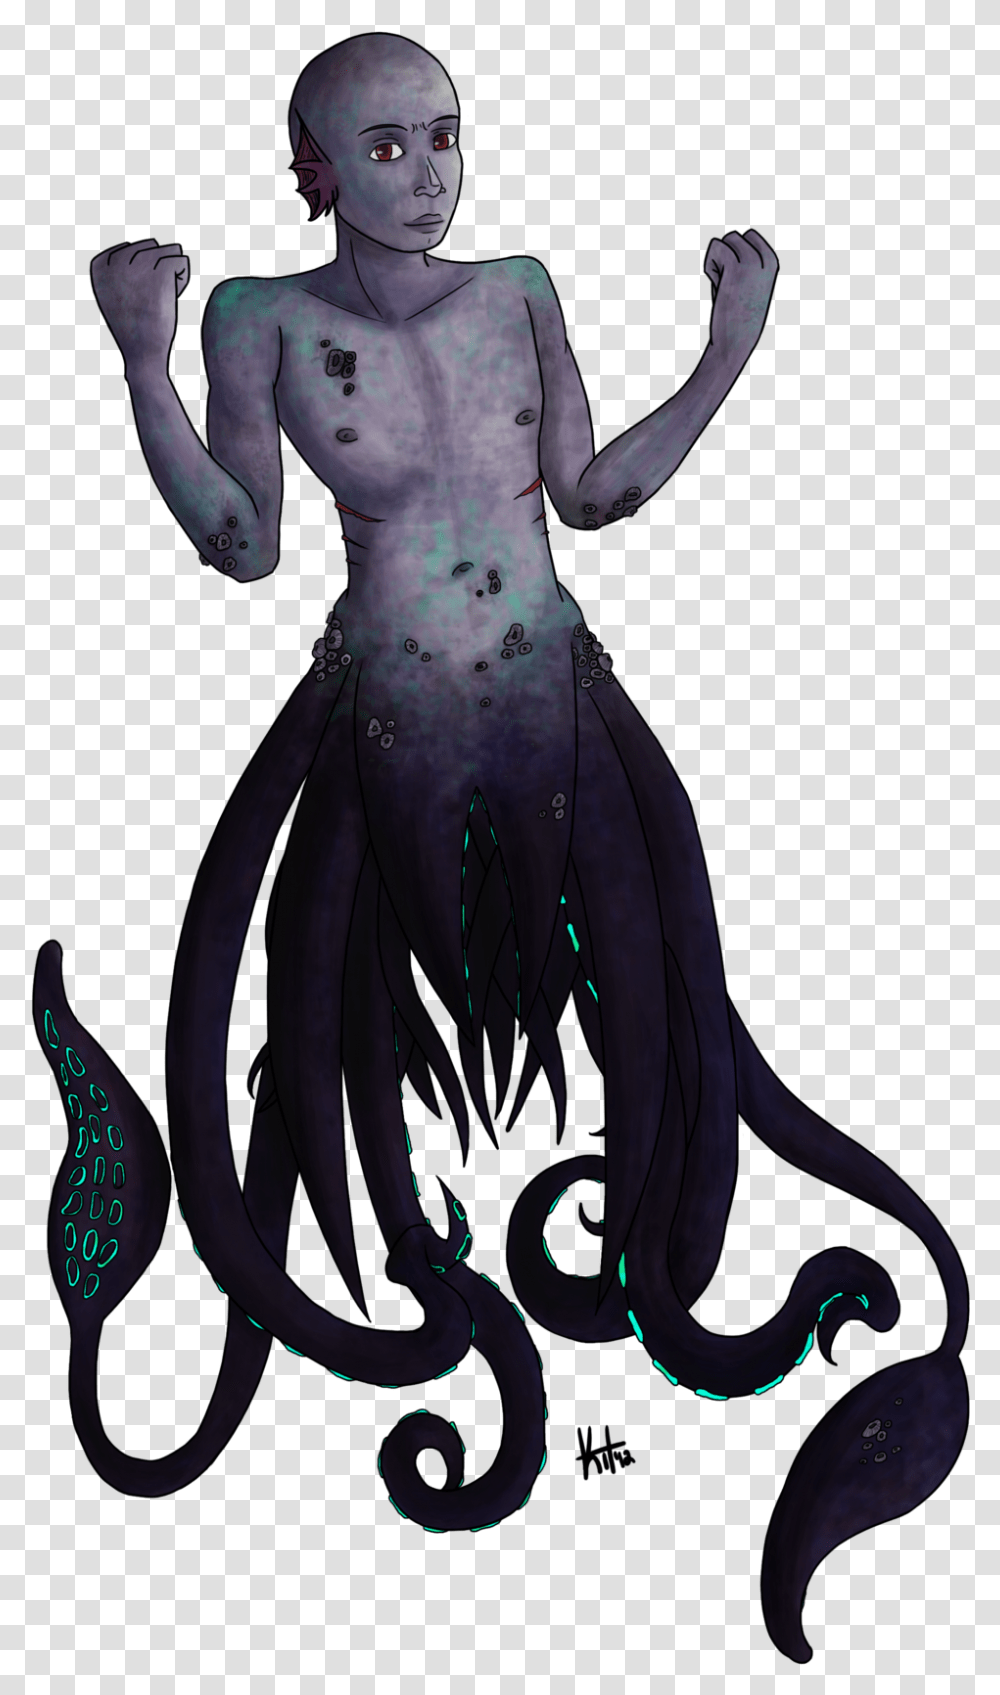 Colossal Squid Octopus Kraken Kraken Squid Or Octopus, Costume, Person, Human, Alien Transparent Png